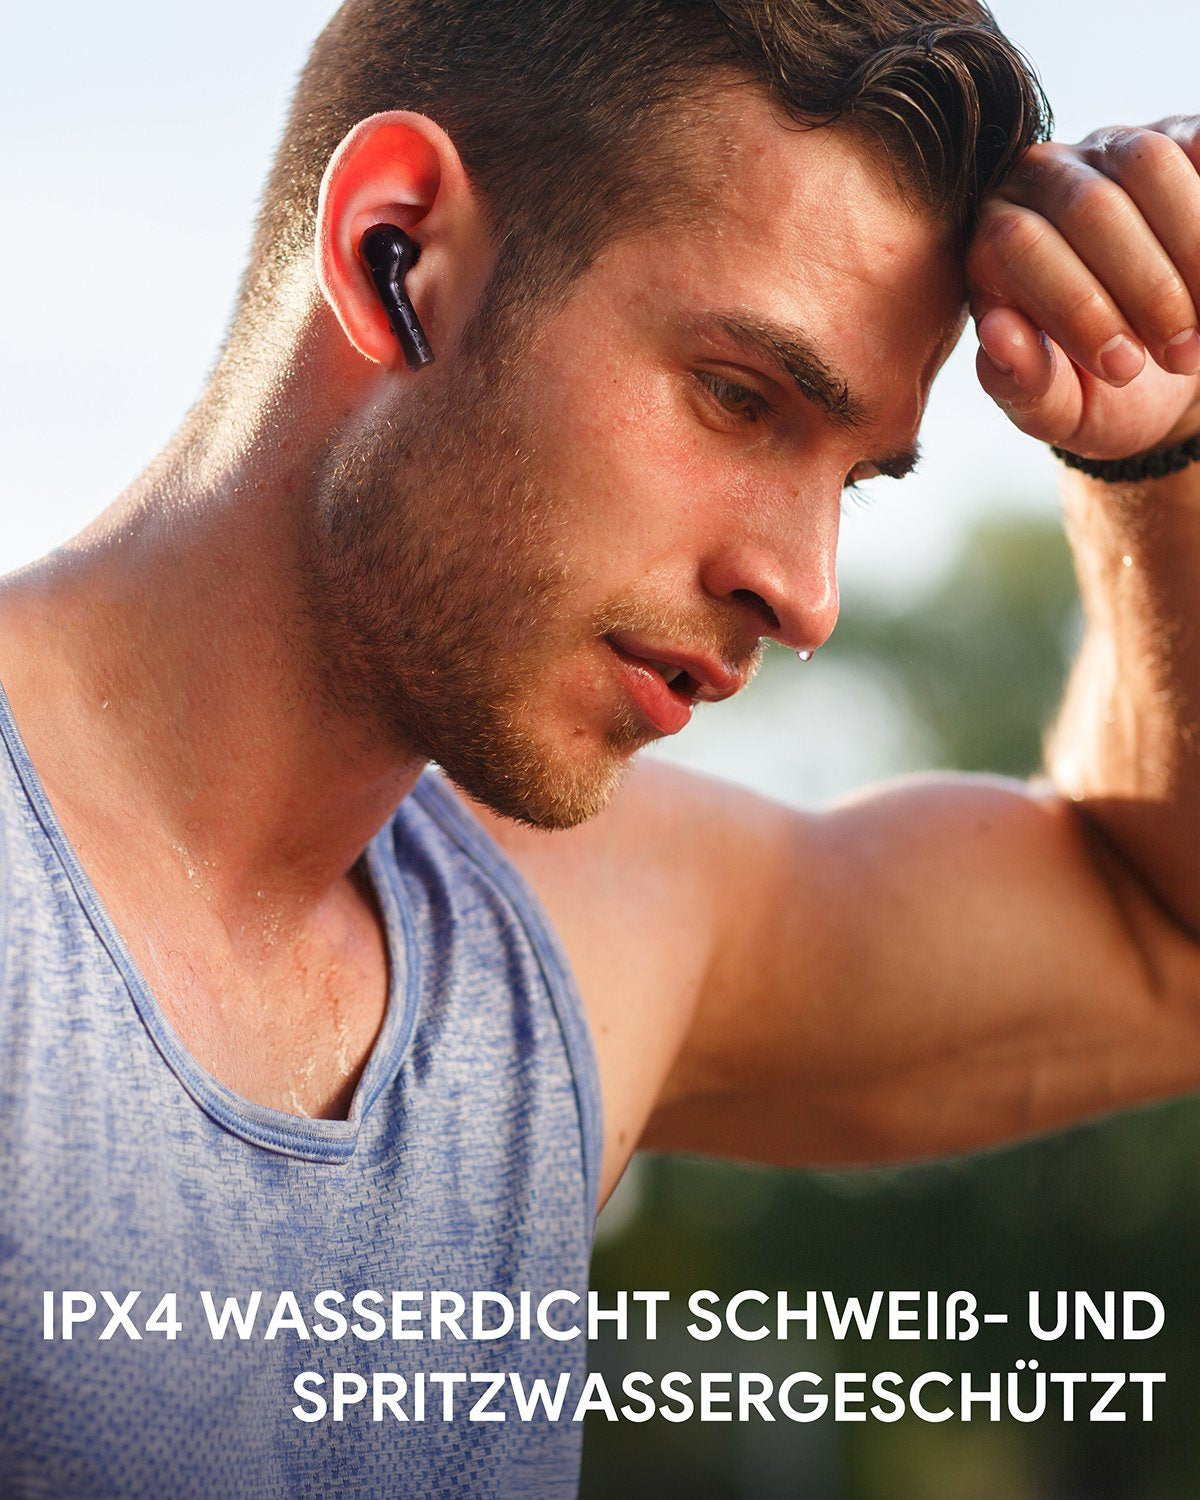 AUKEY True Wireless In-Ear Kopfhörer Schwarz, EP-T21